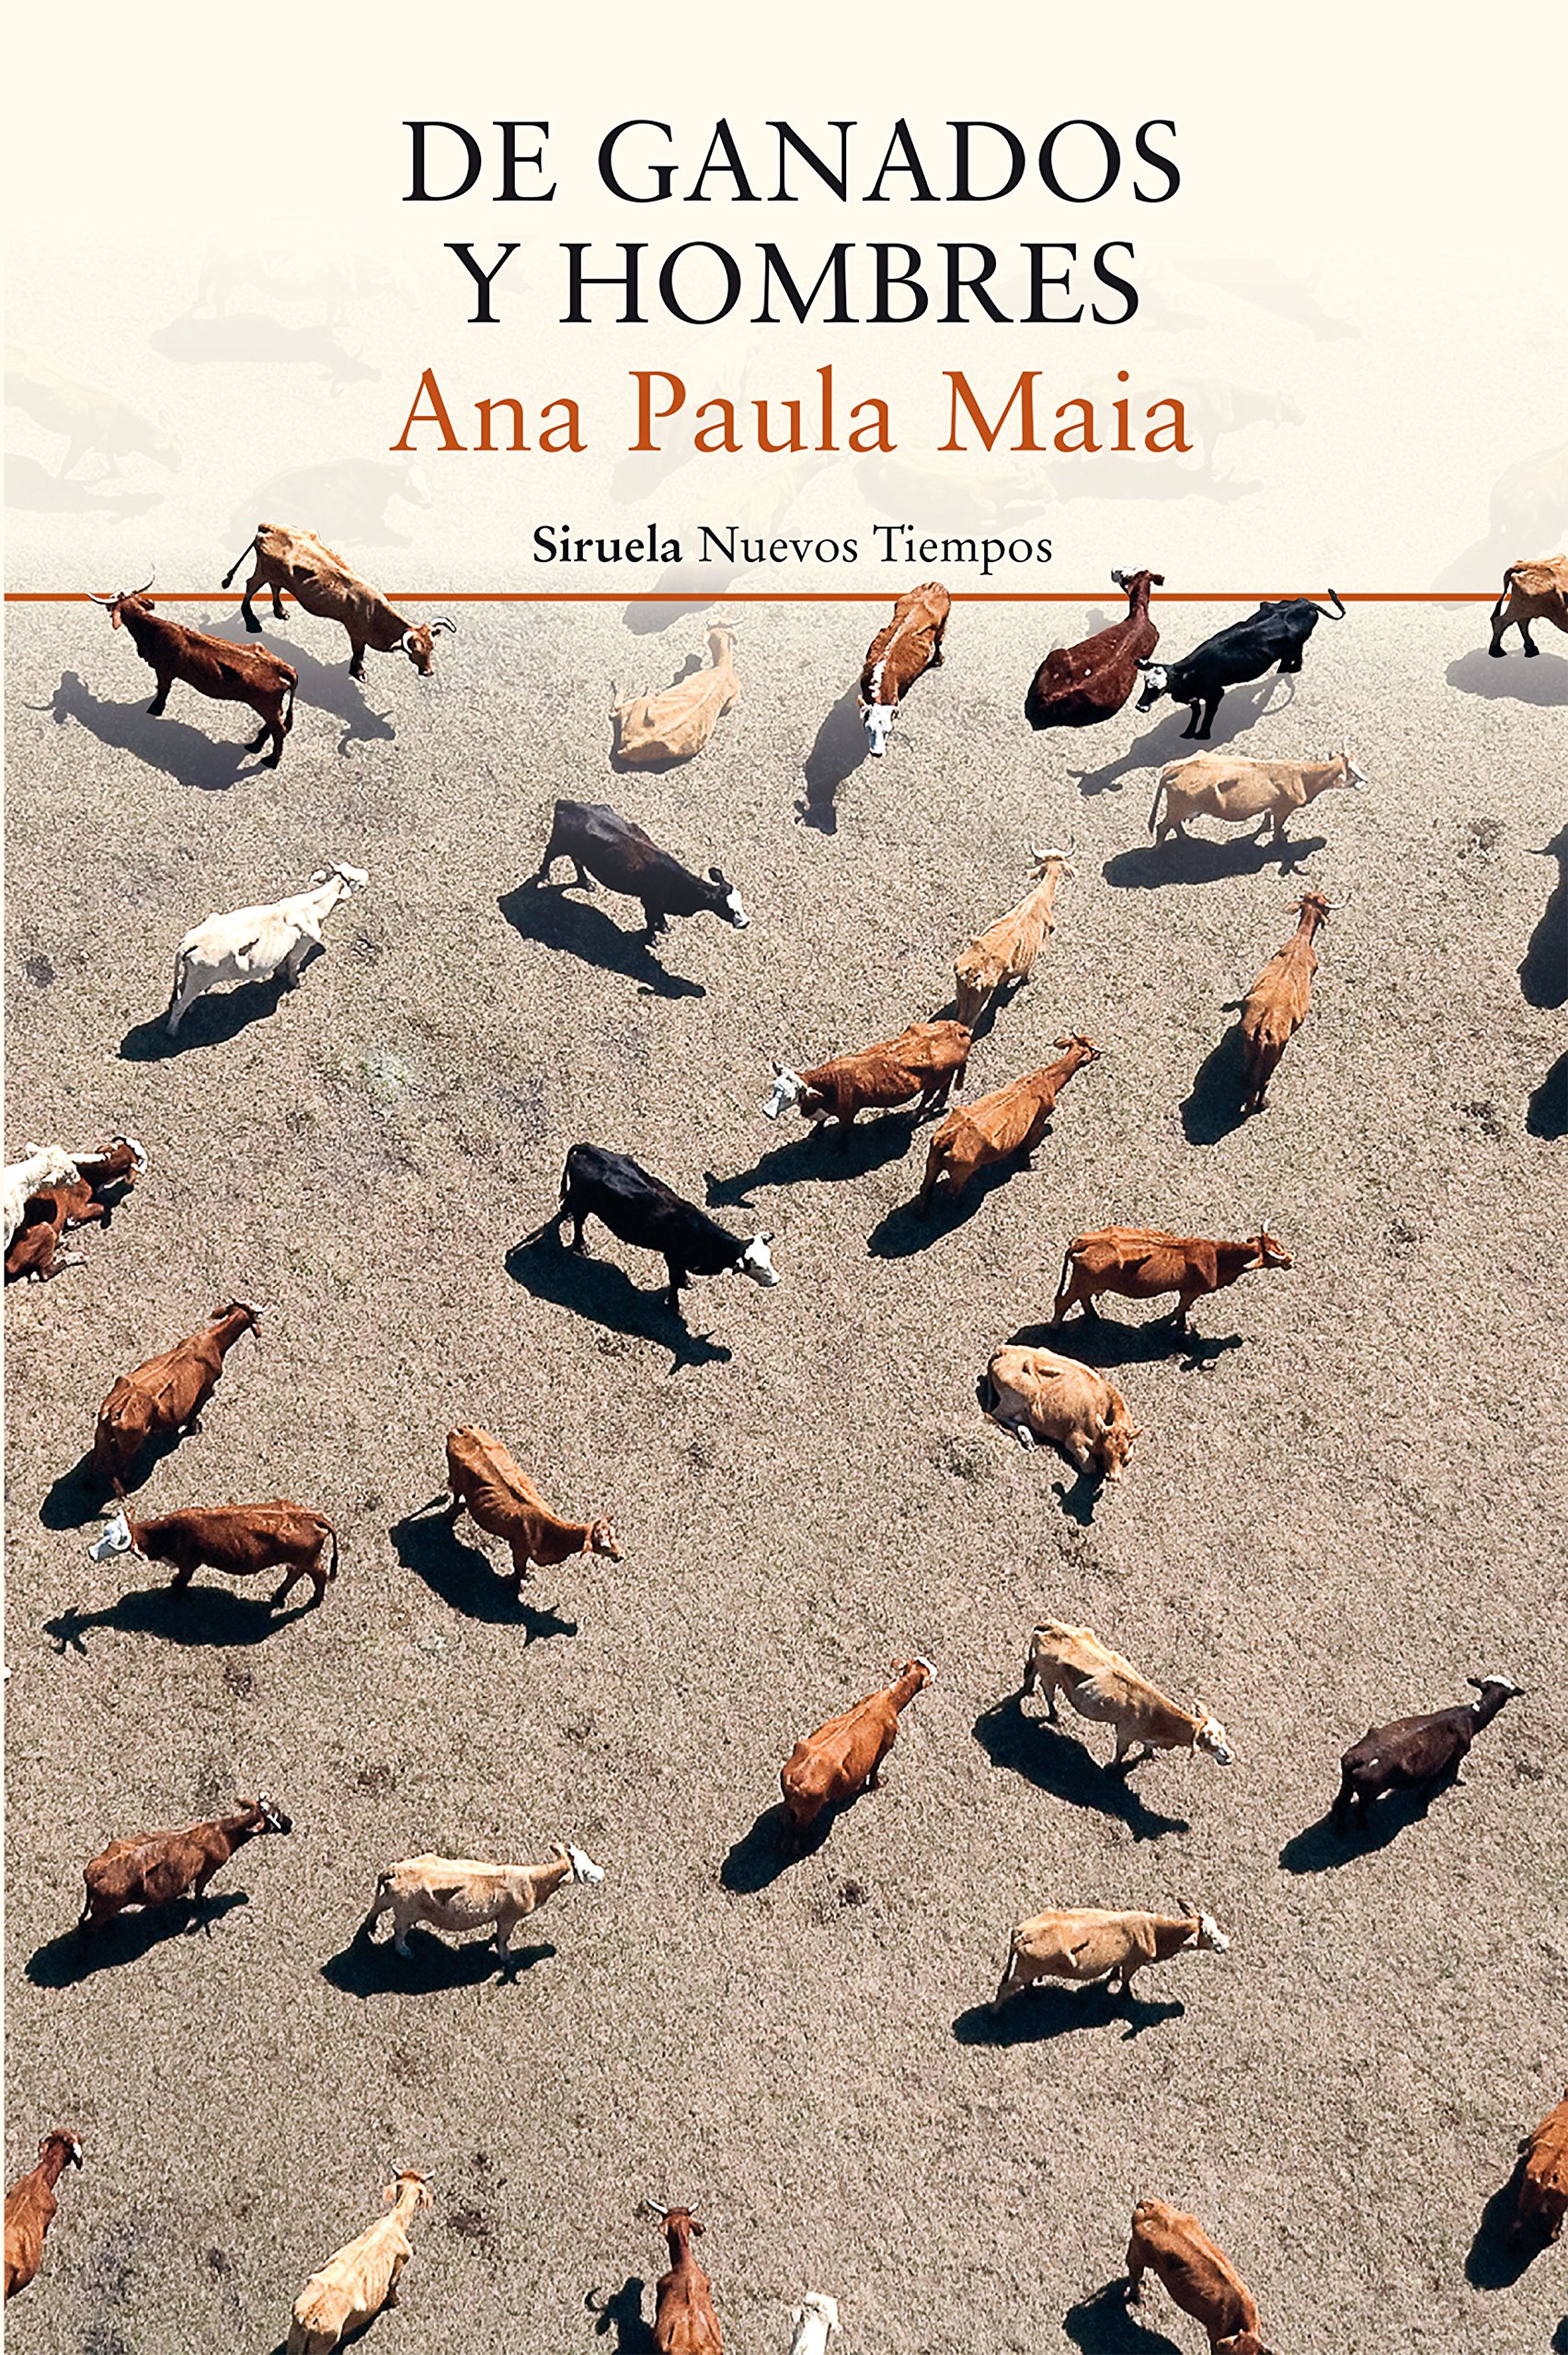 Zenda recomienda: De ganados y hombres, de Ana Paula Maia